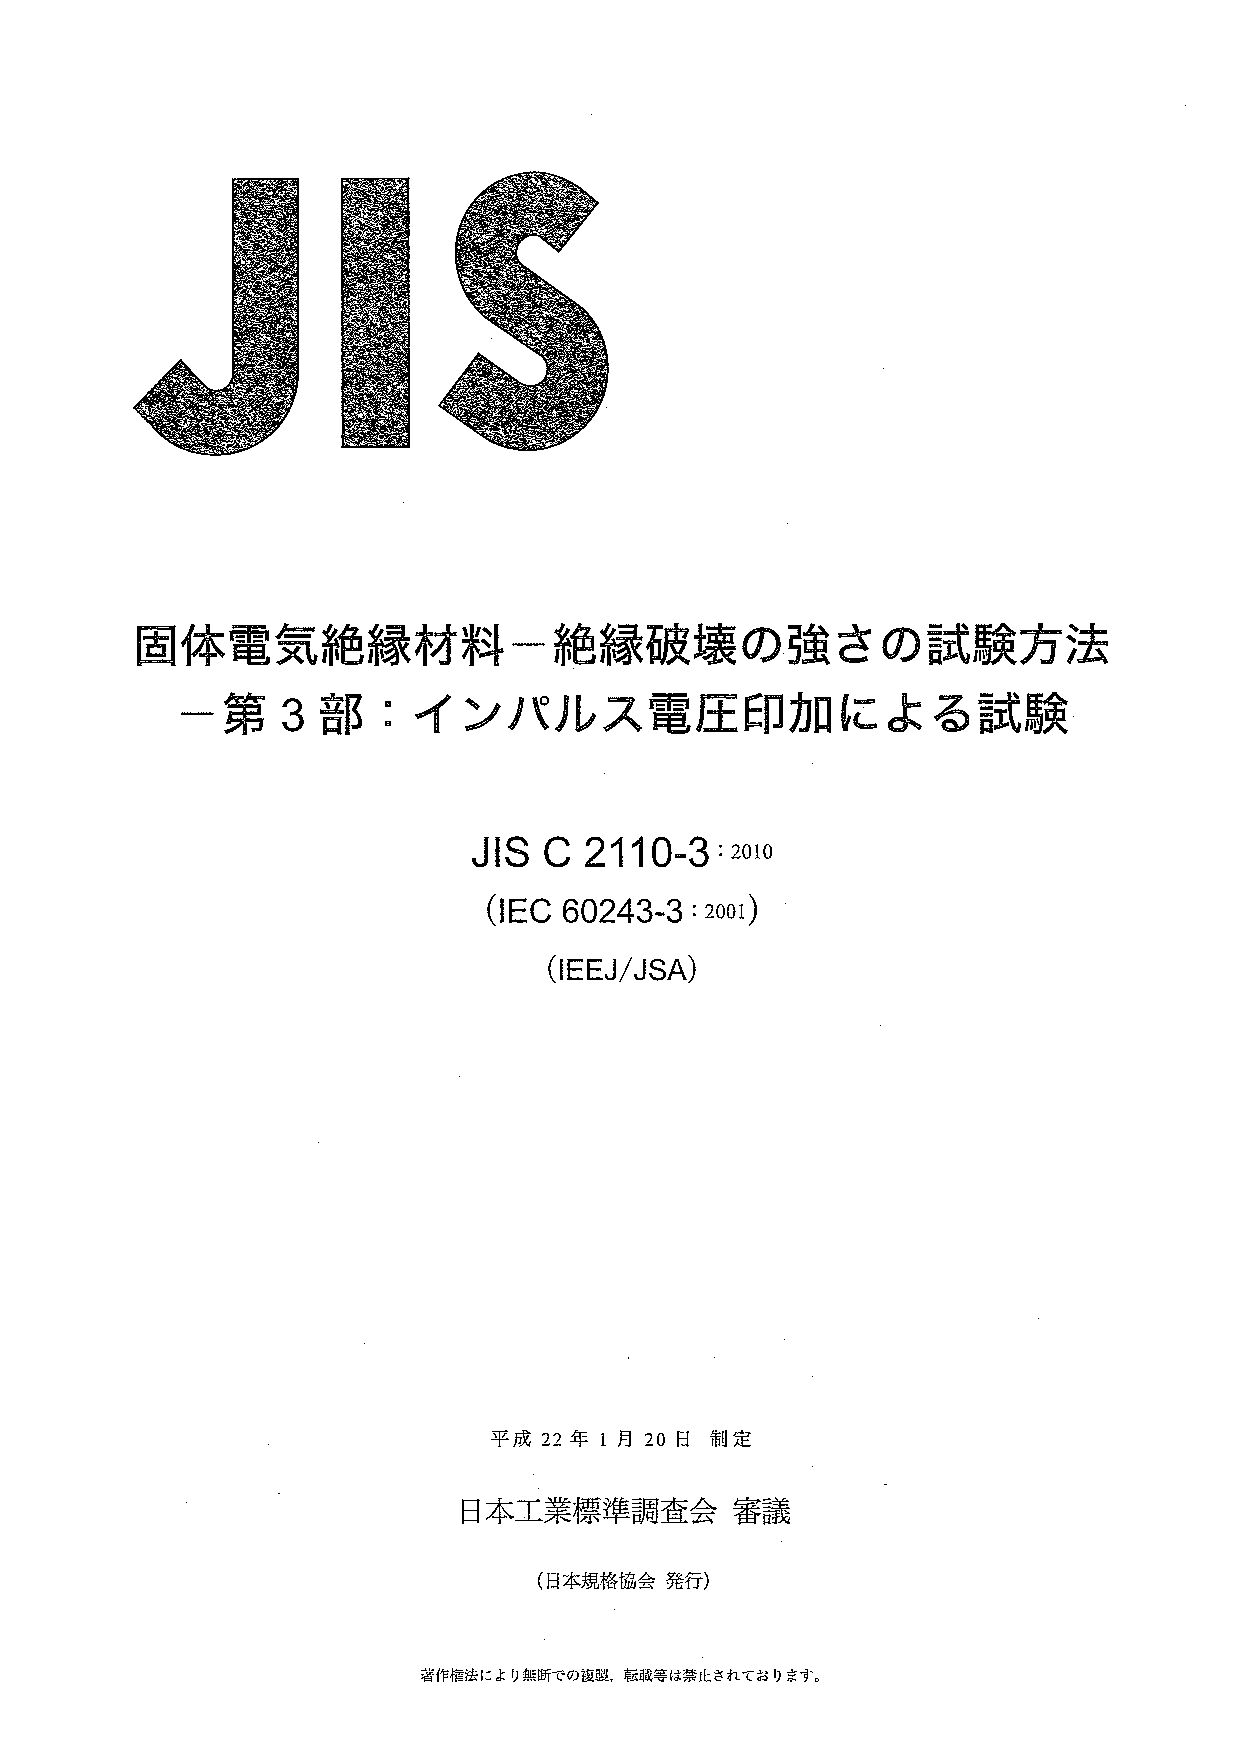 JIS C 2110-3:2010